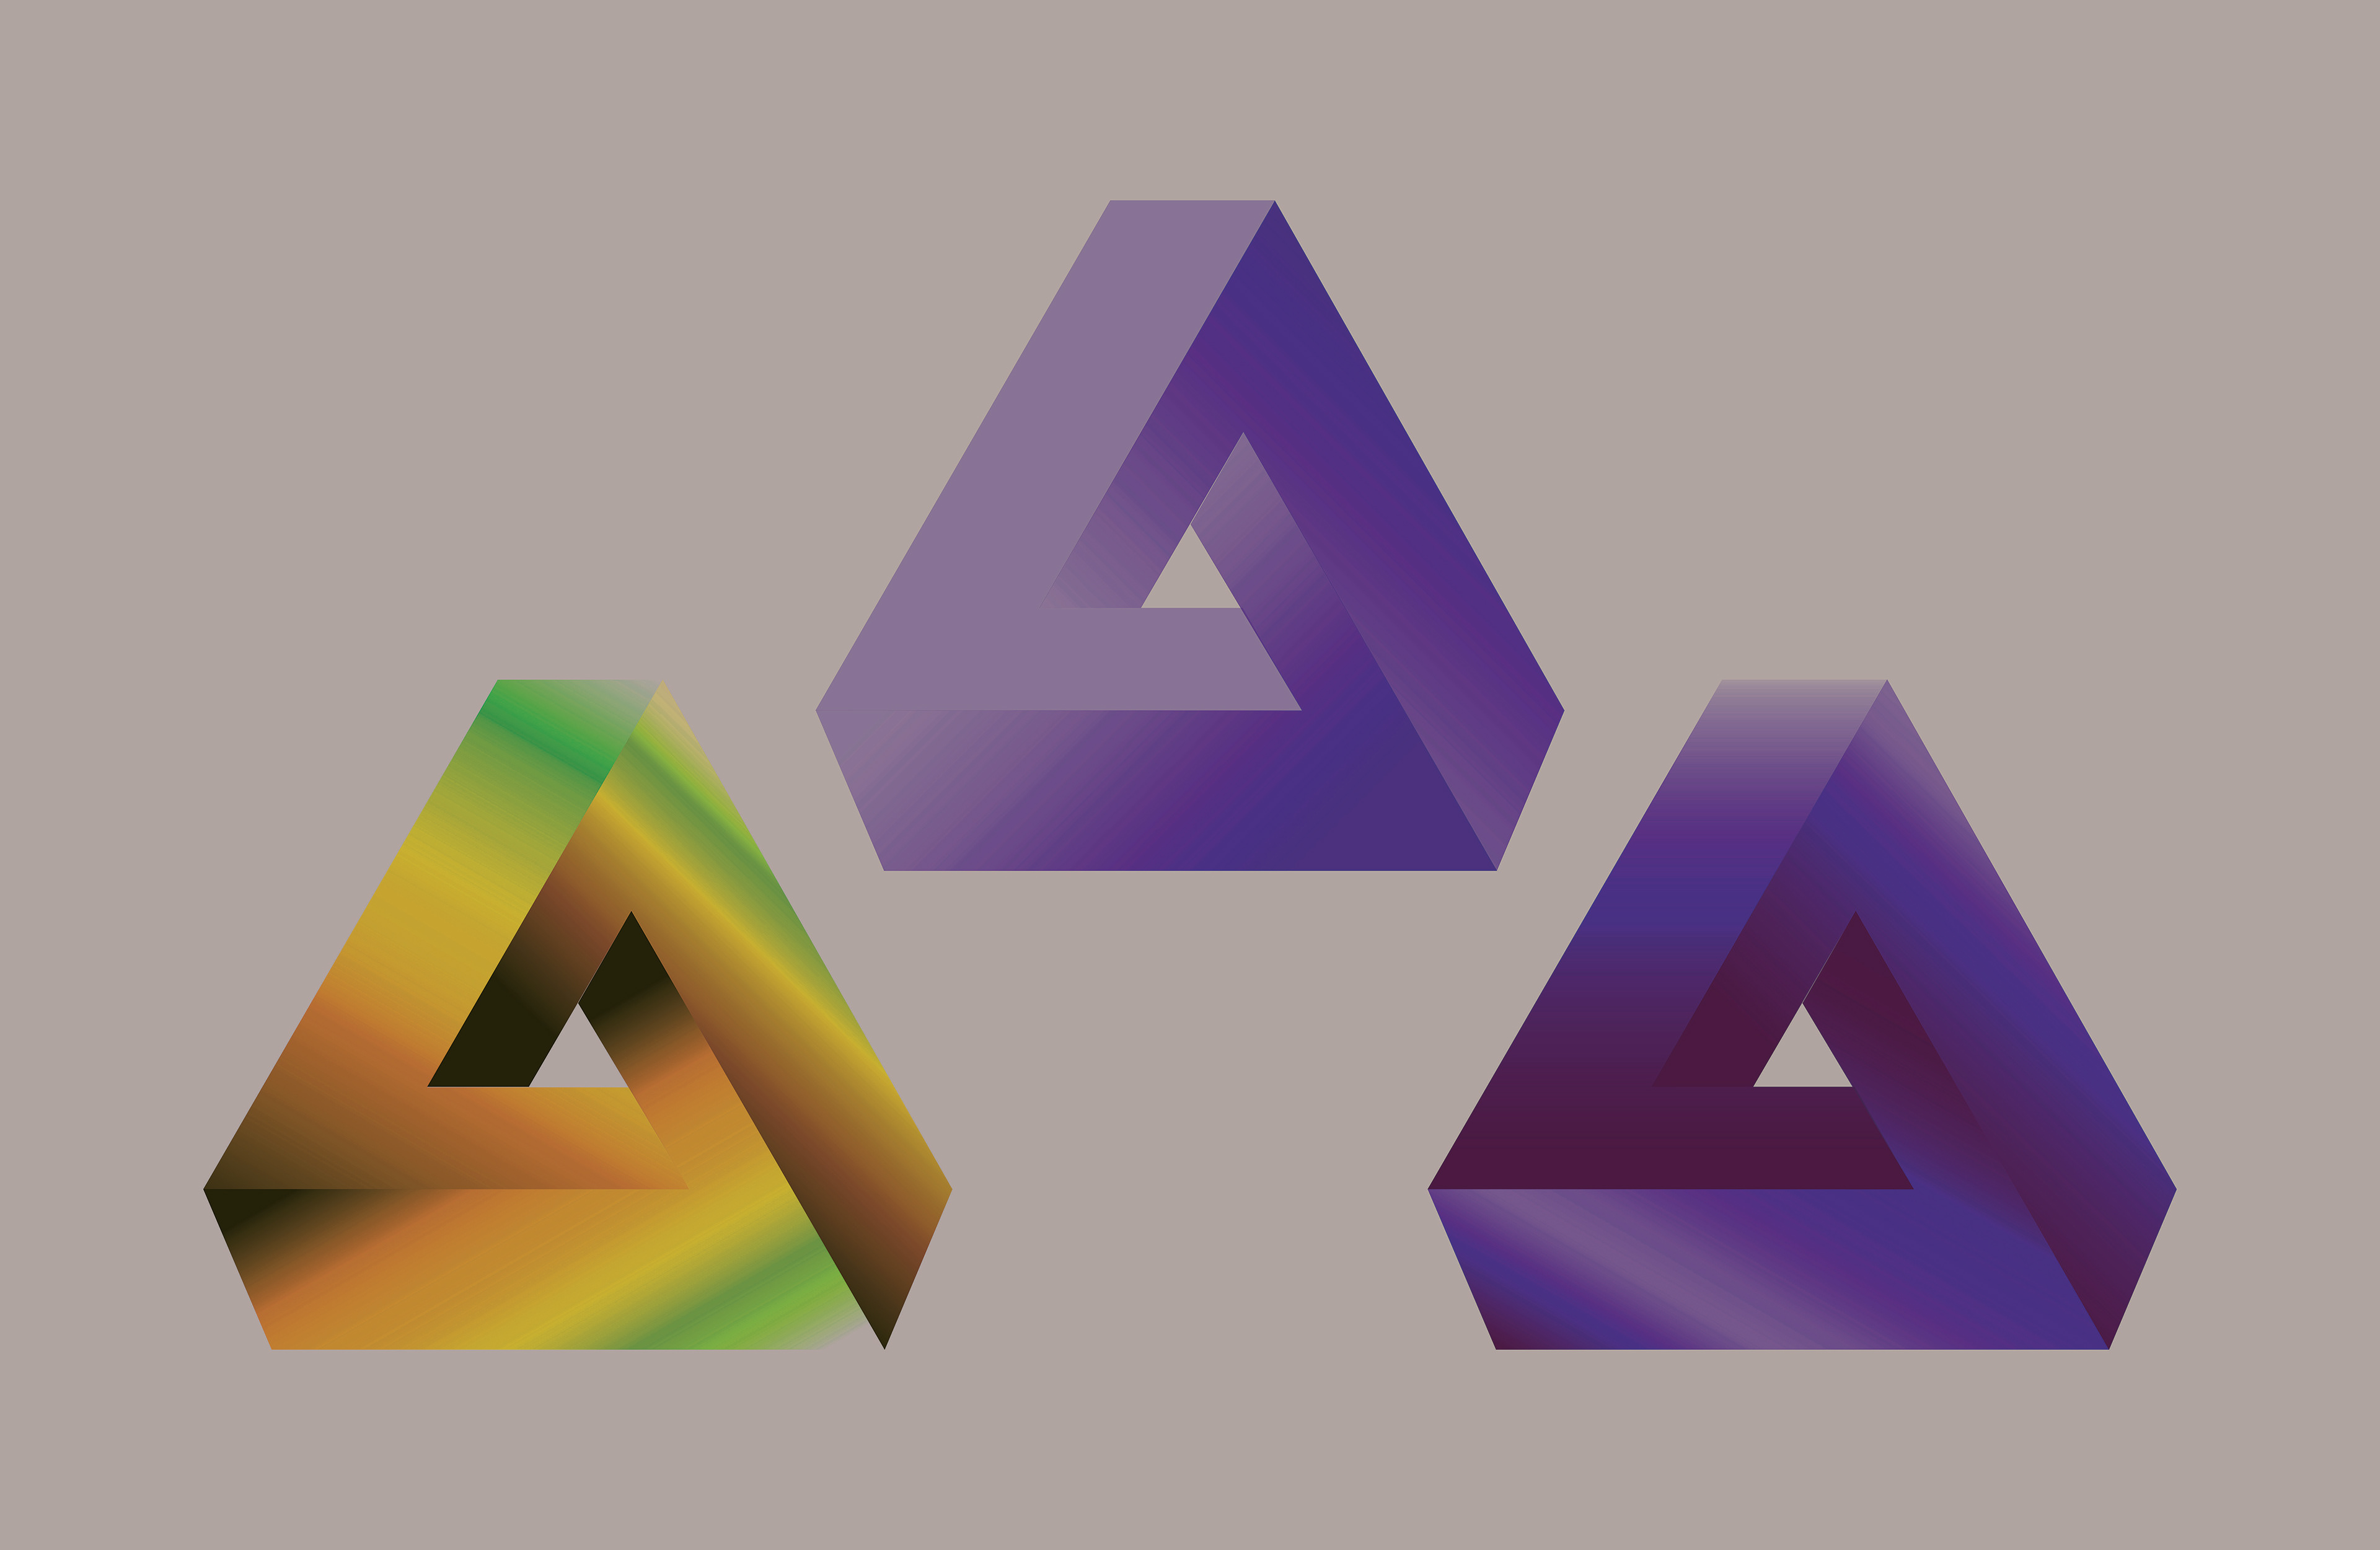 Случайная геометрическая фигура. Треугольник Пенроуза иллюстратор. Самые красивые геометрические фигуры. Геометрические фигуры в иллюстраторе. Фантастические геометрические фигуры.